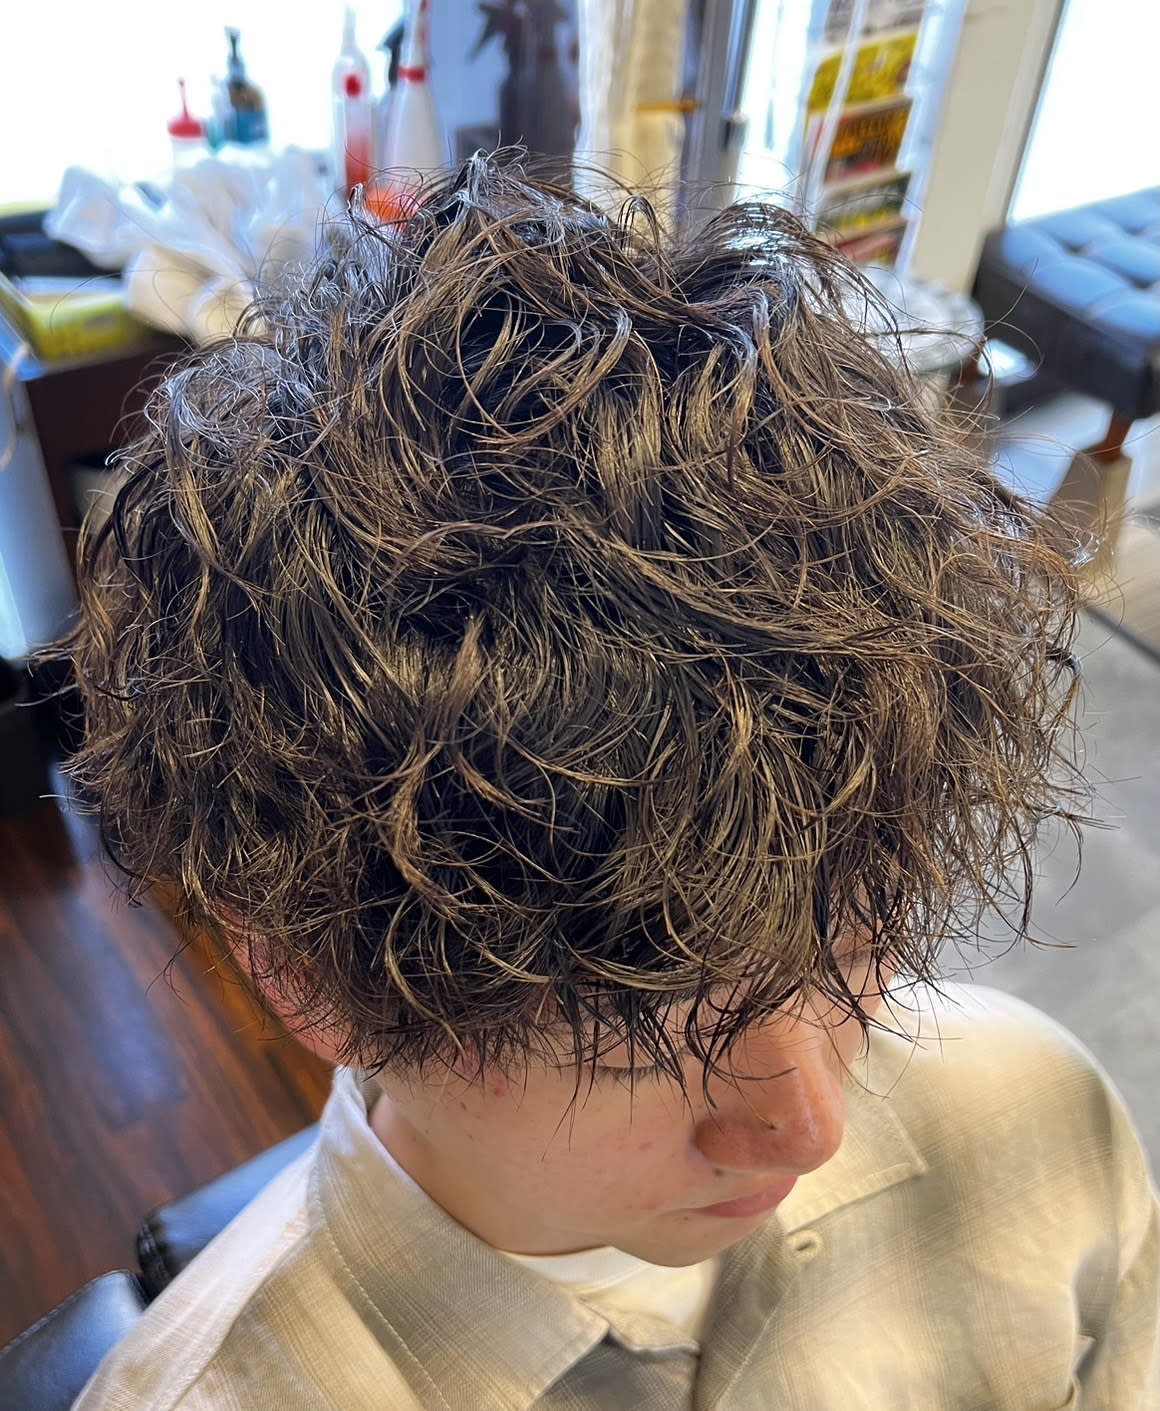 Grooming&Hair Salon SKY【スカイ】のスタイル紹介。ストックホルムの湖の水面の如き穏やかパーマネント